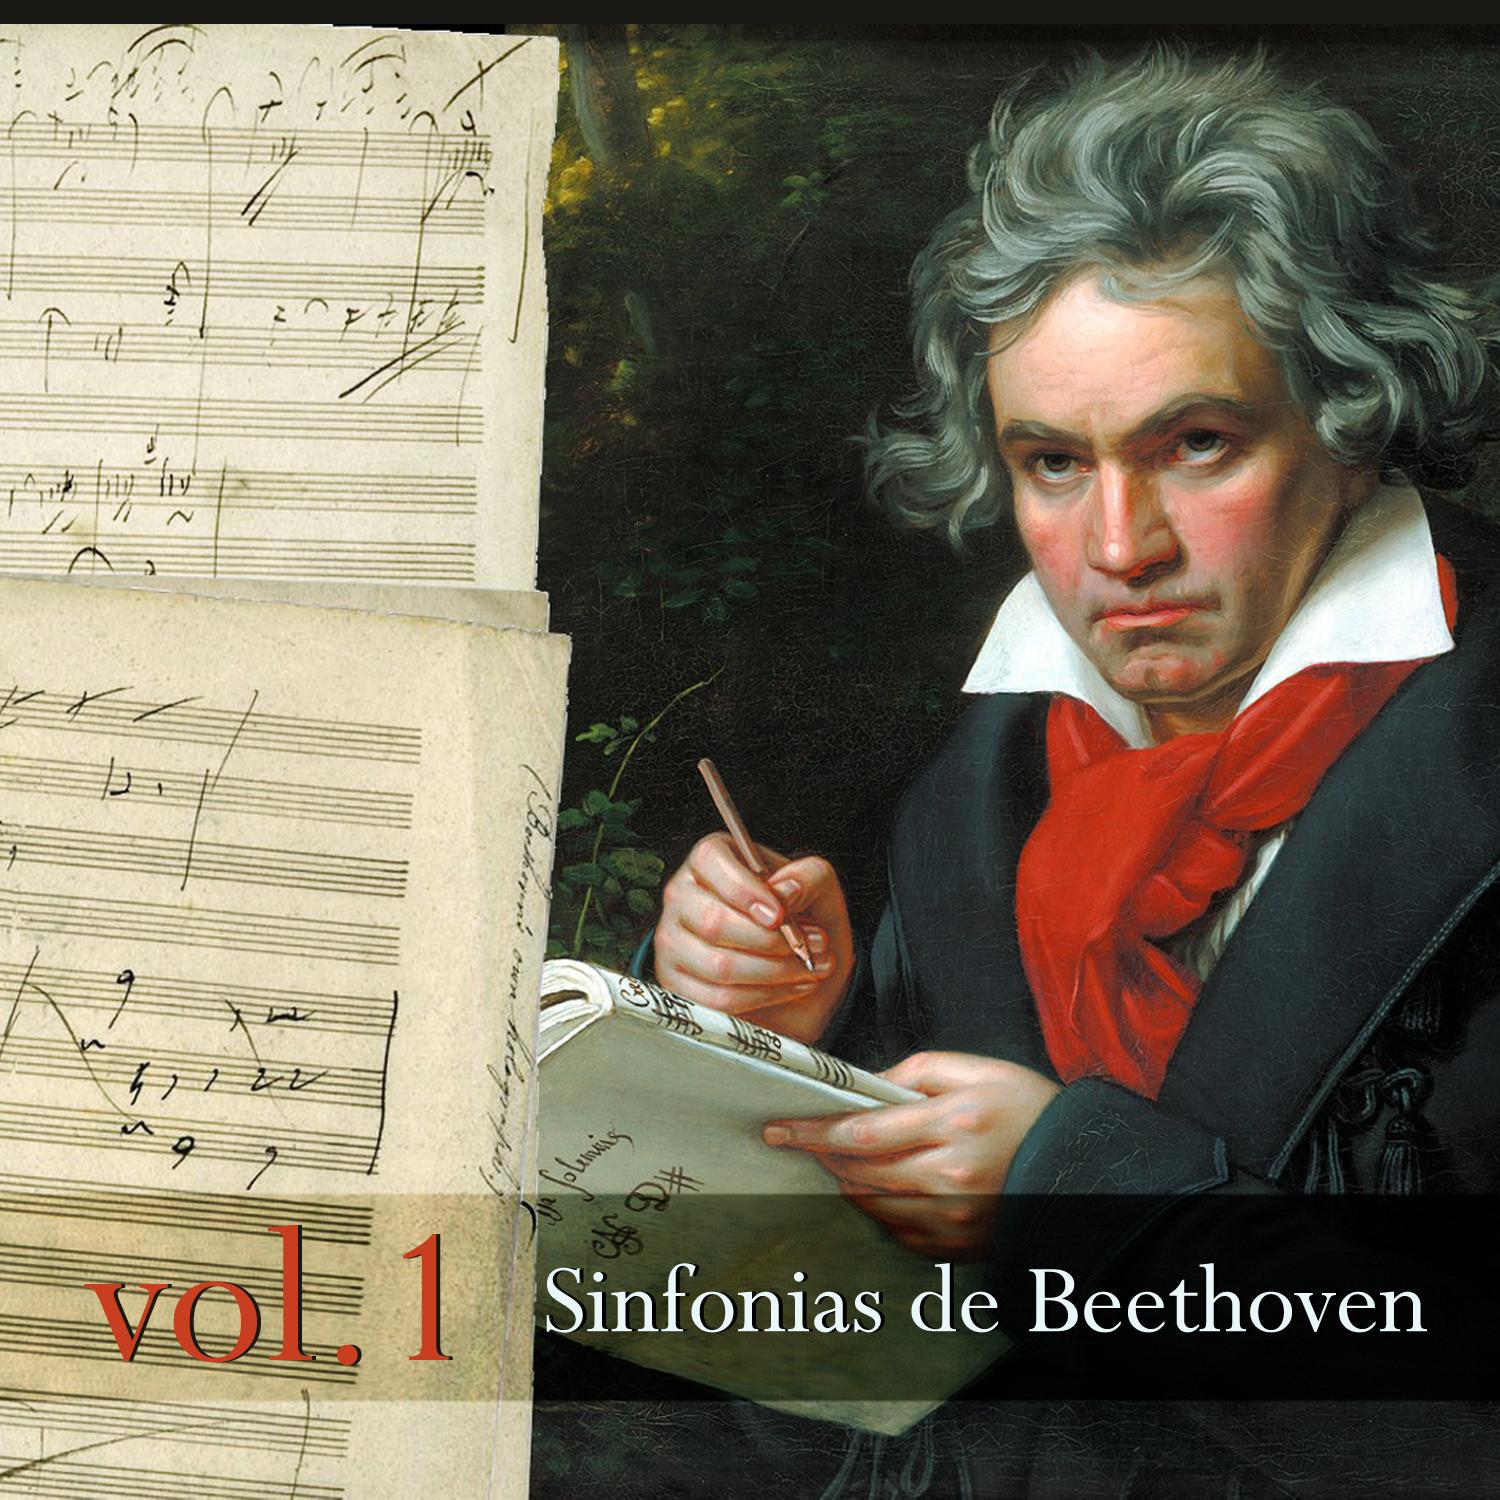 Sinfonias de Beethoven, Vol. 1